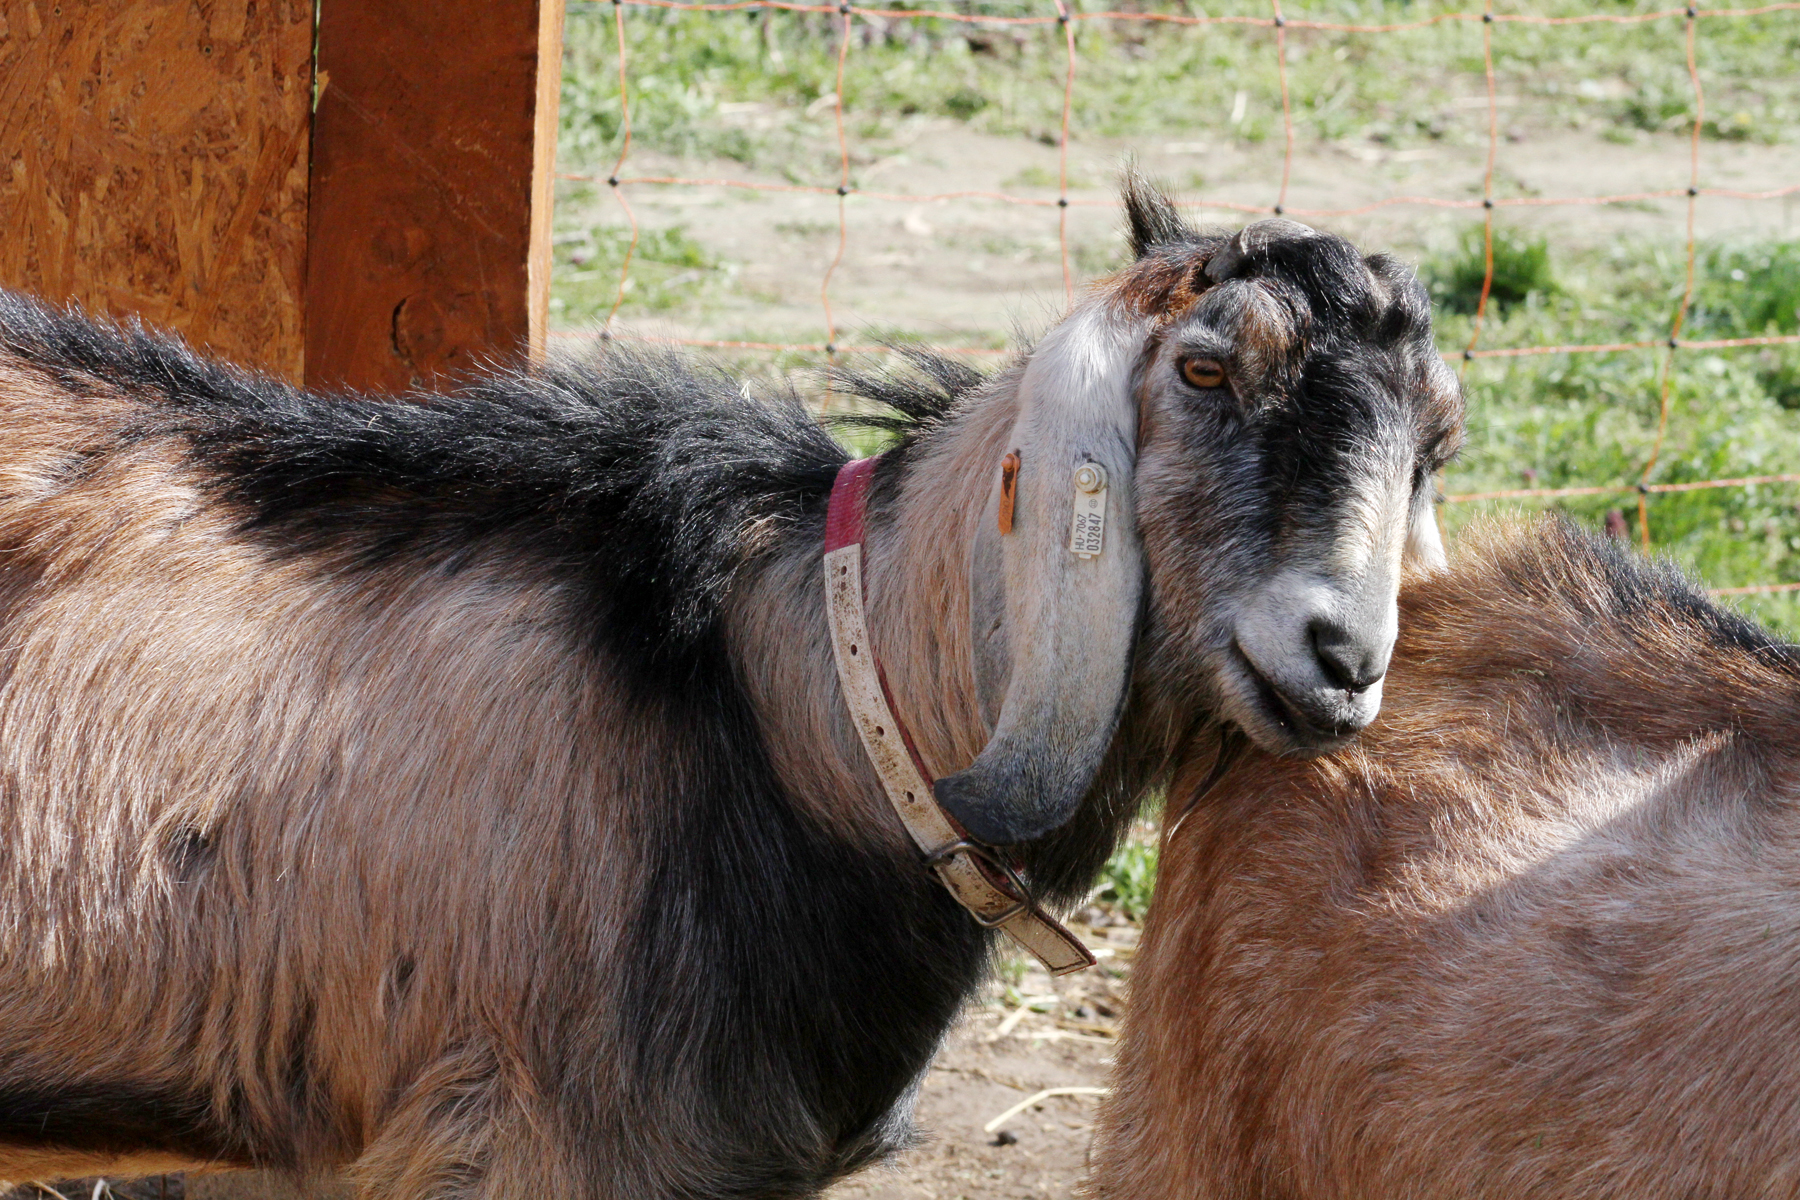 Kiakad a cukiságmérő / lógó fülű kecskék a Balatonnál